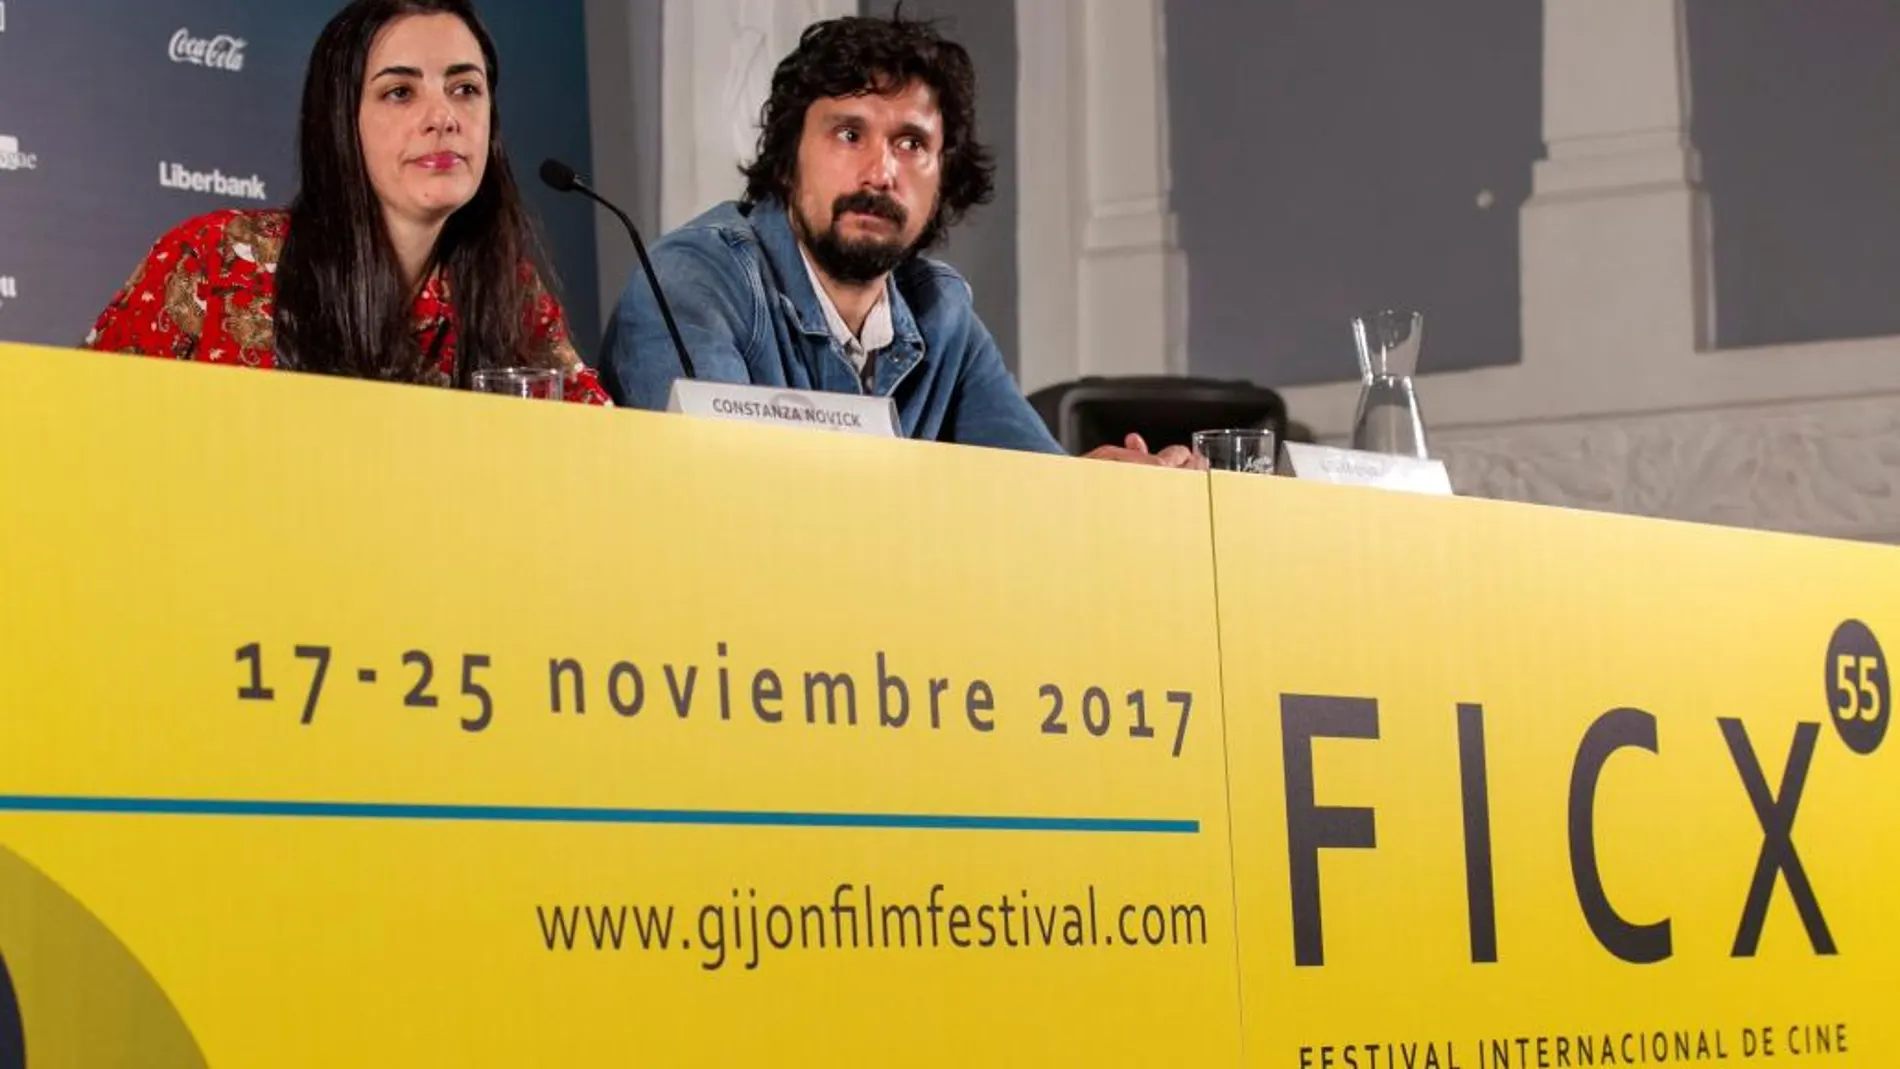 La directora argentina Constanza Novick presentó hoy junto con el productor Lisandro Alonso su primera película, "El futuro que viene", con la que concurre en la sección oficial de la 55 edicion del Festival Internacional de Cine de Gijón